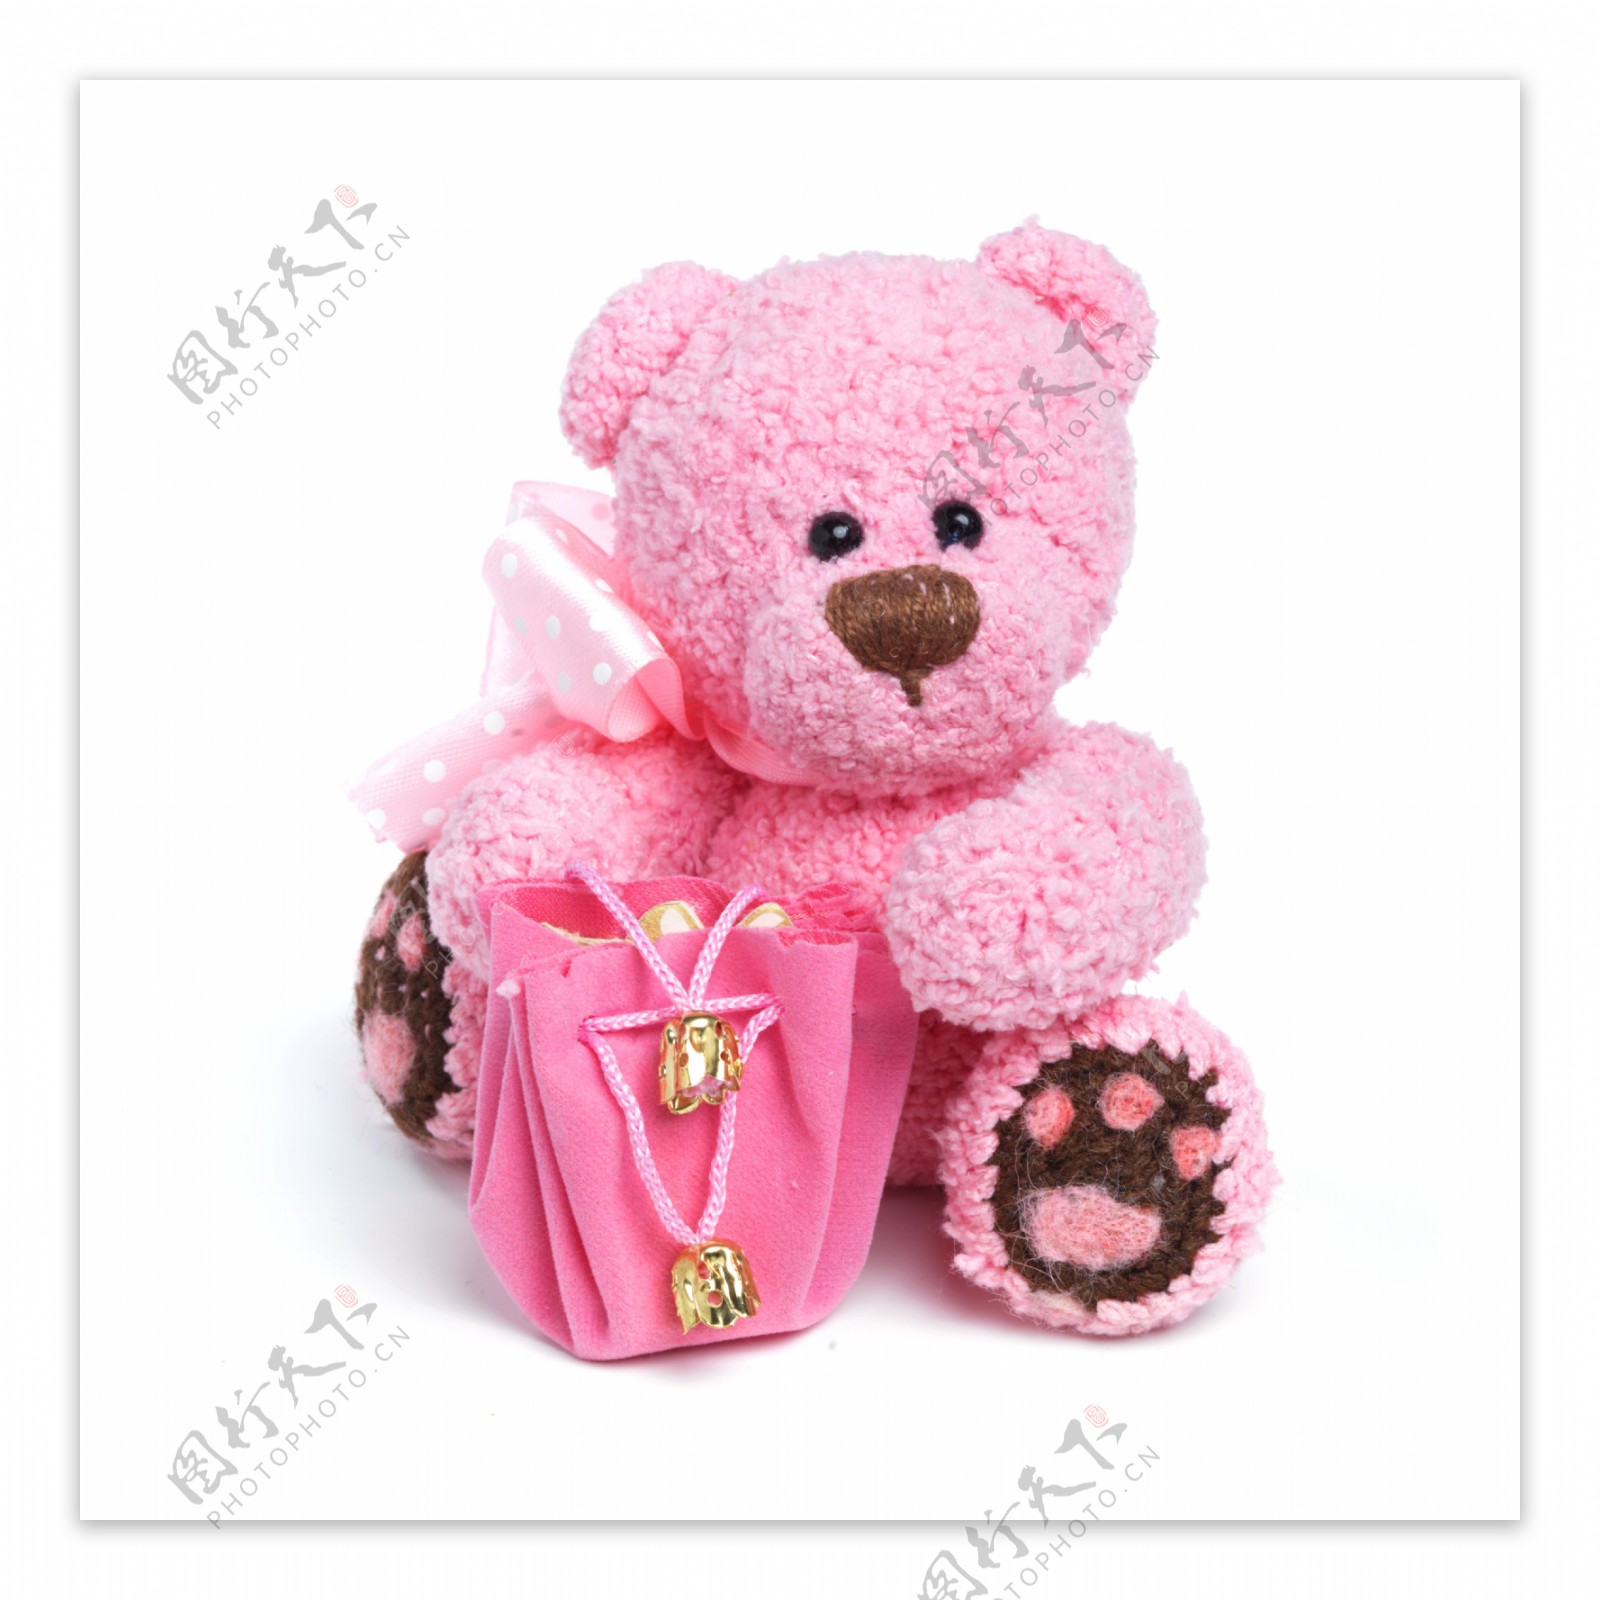 粉红色的泰迪熊娃娃图片